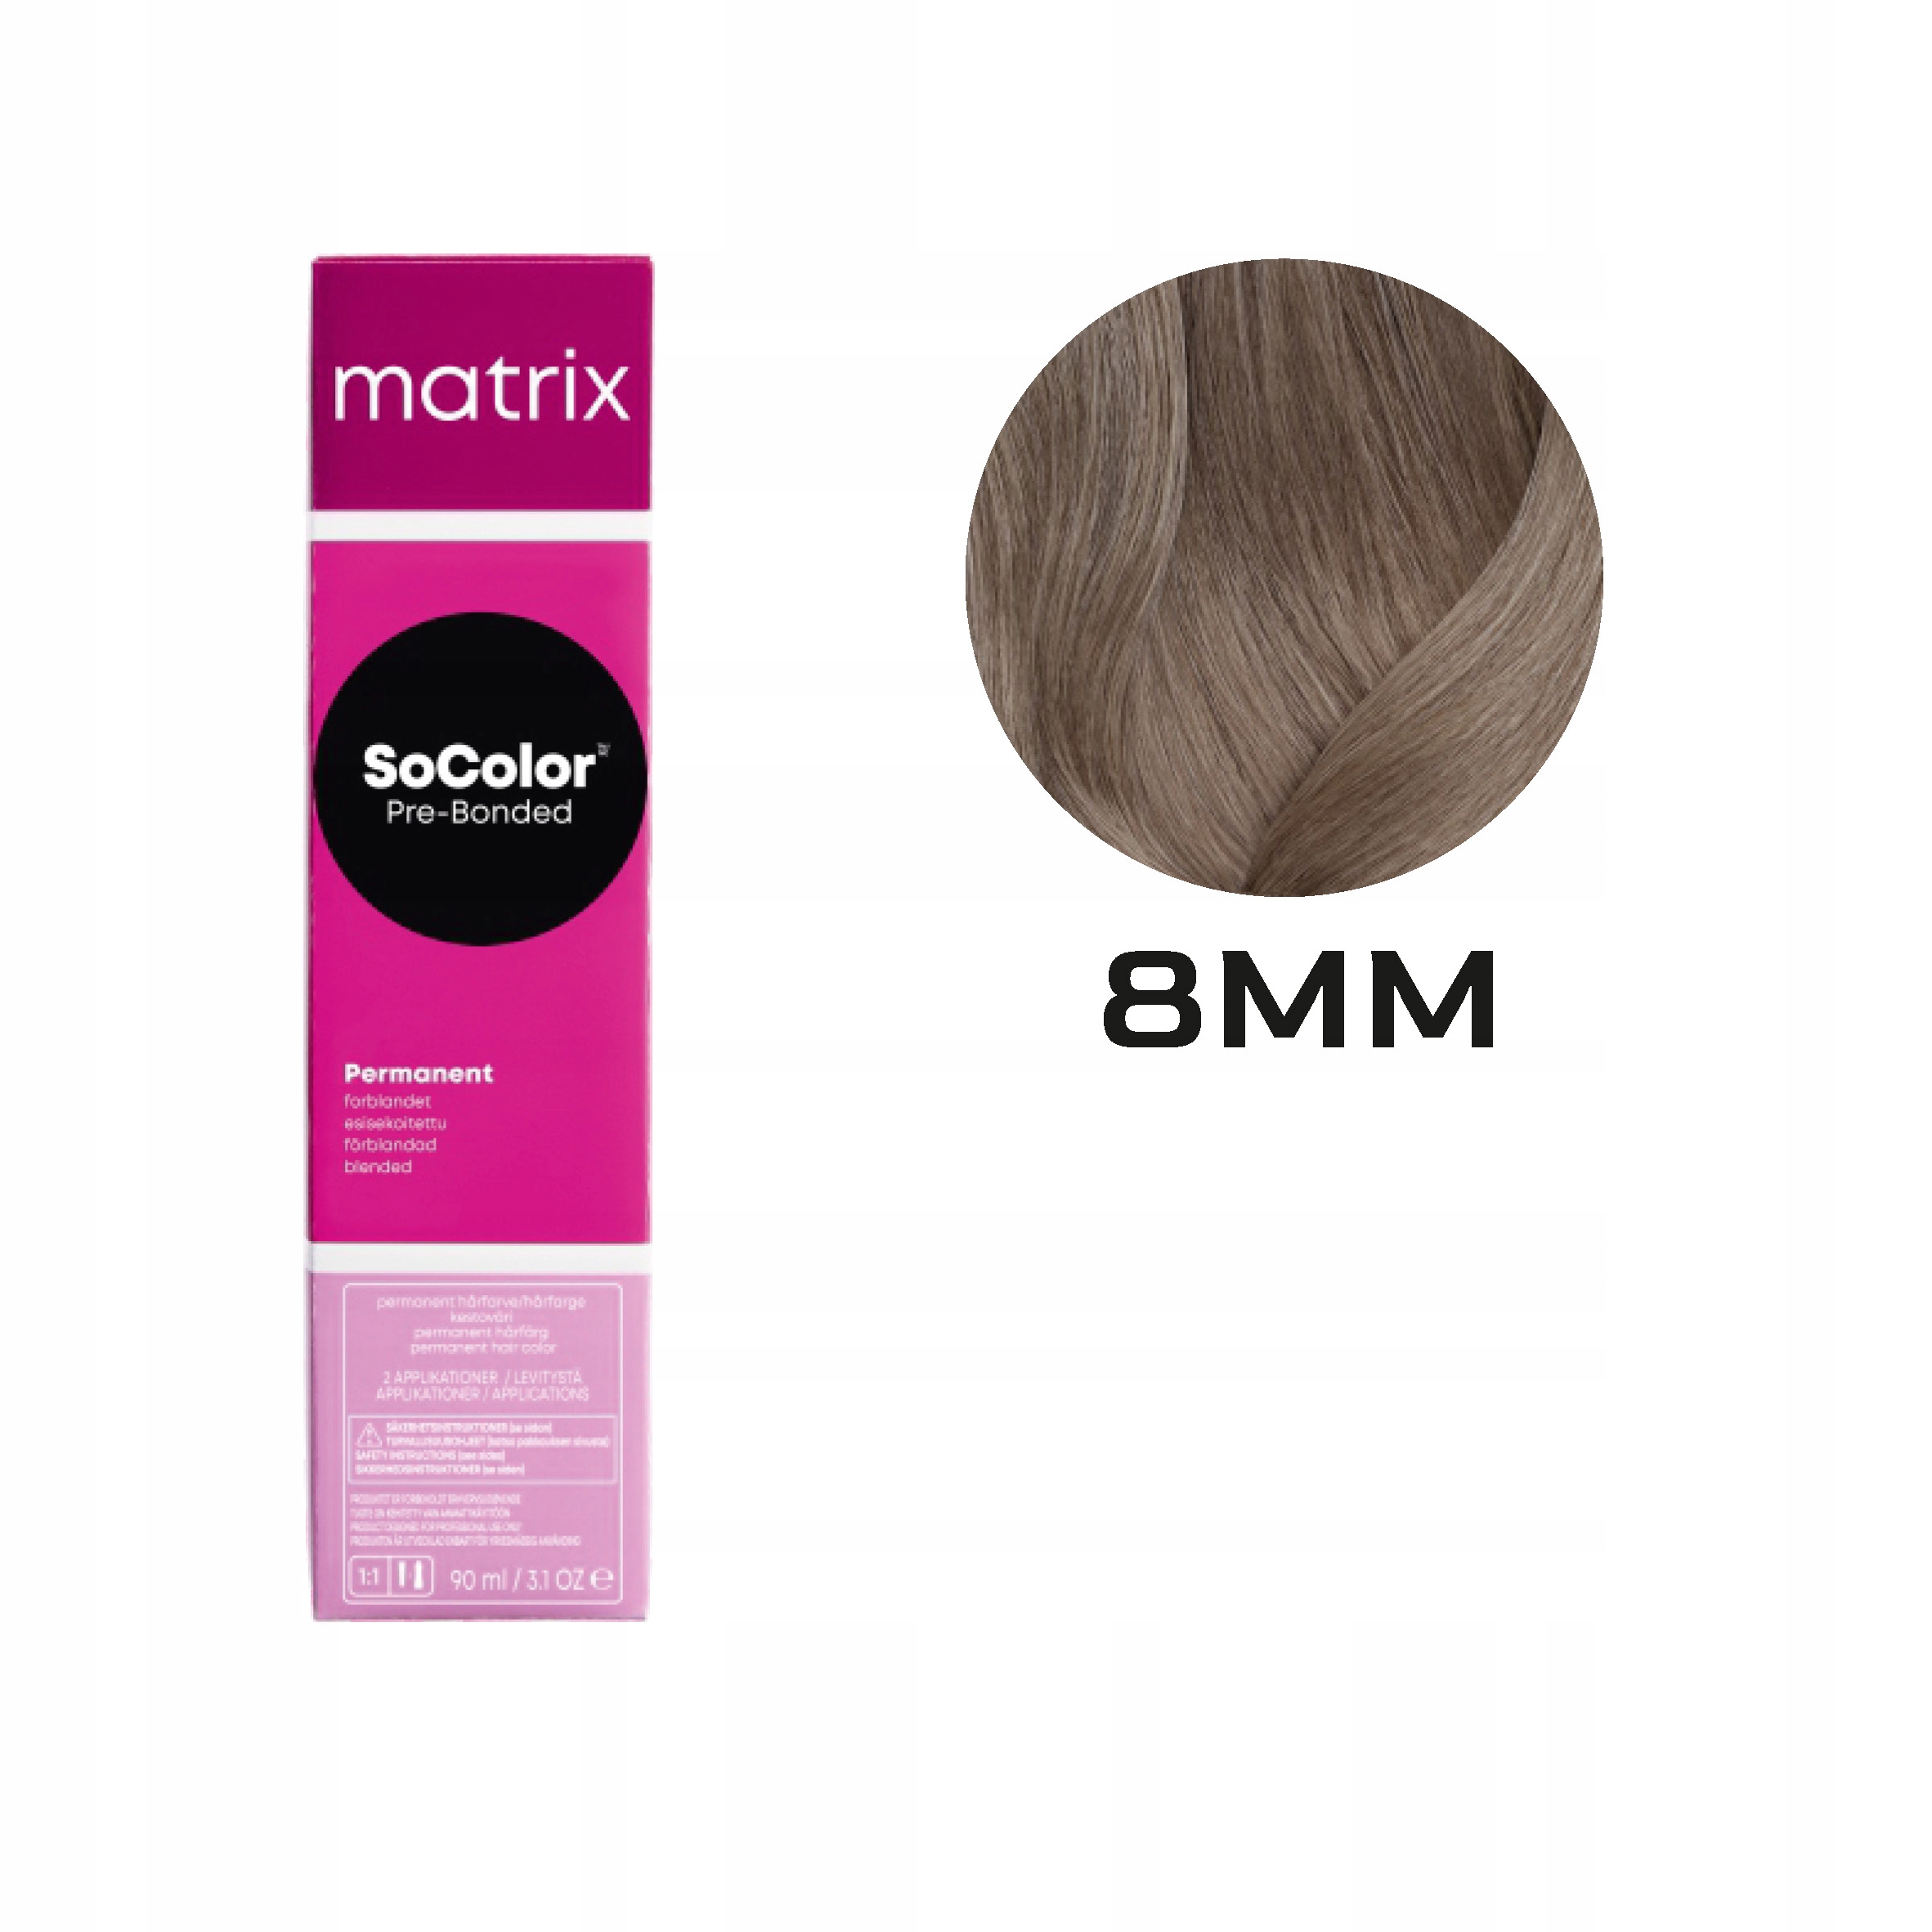 Matrix SoColor SCB2 8MM farba do włosów 90ml